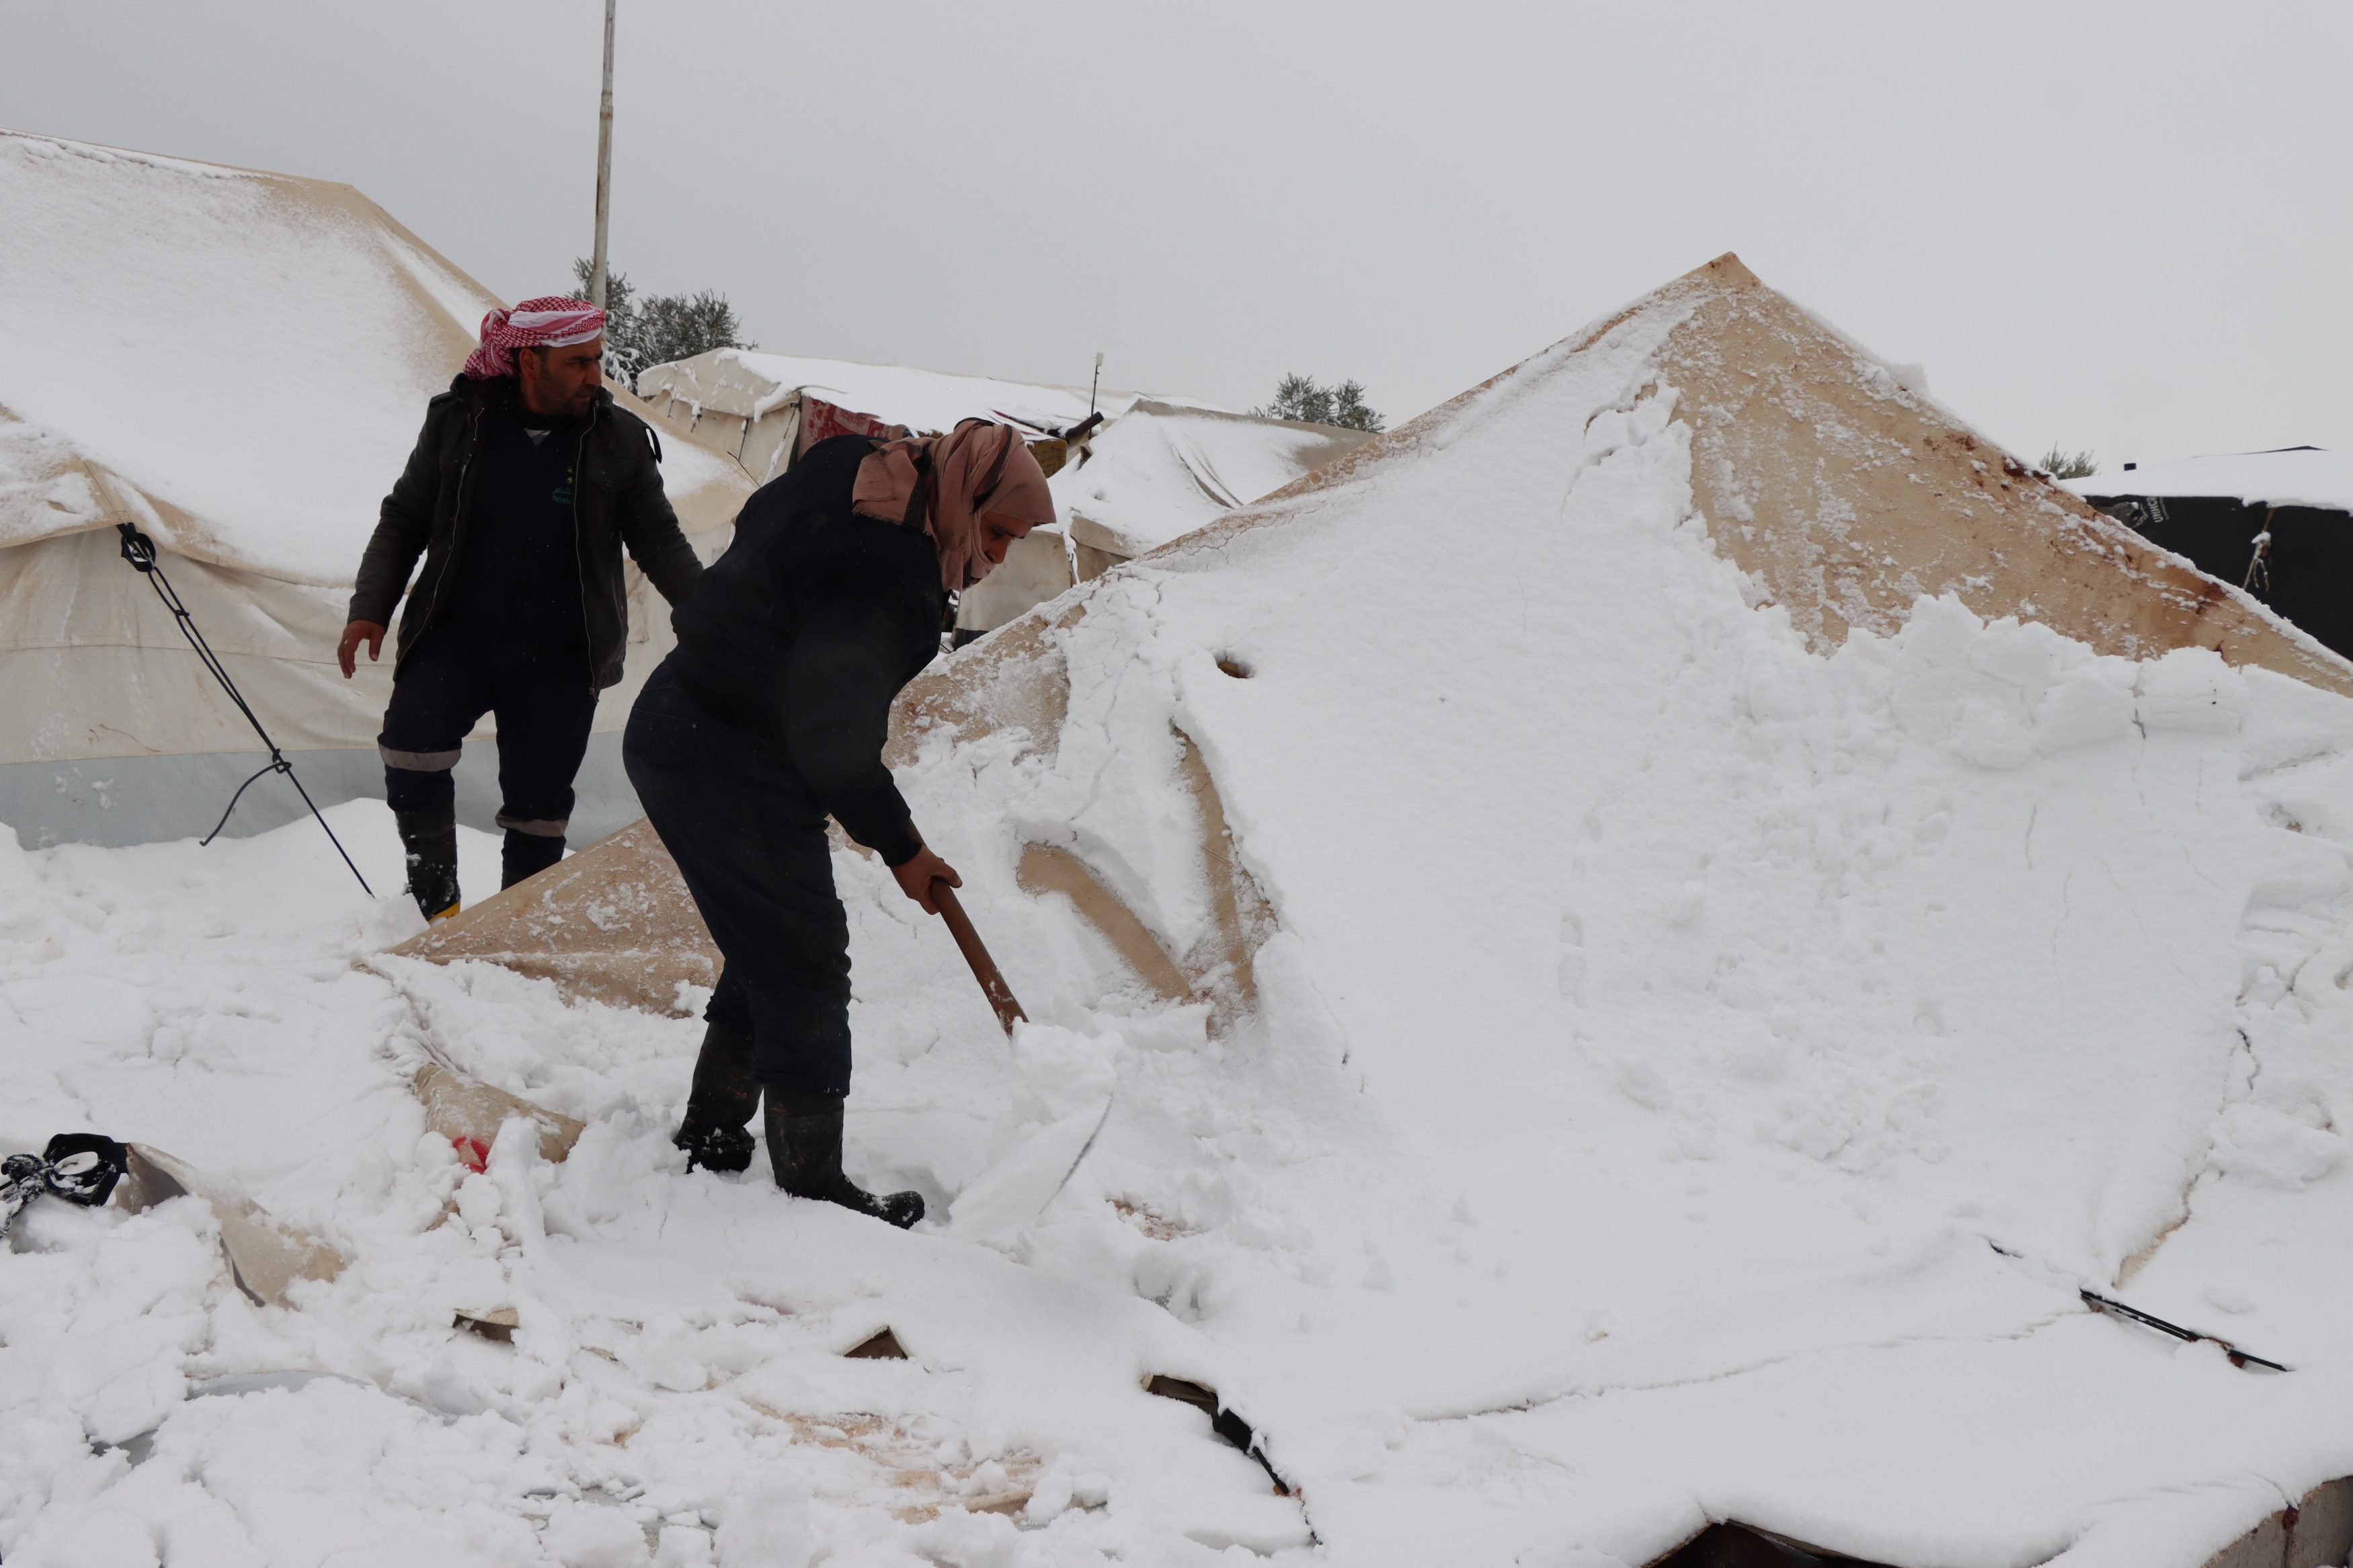 Winterhilfe für Syrien. Die provisorischen Unterkünfte werden von den einbrechenden Schneemassen befreit. Das war im Winter 2022/23 so und wird für die kommende Saison wieder erwartet. Die Vorbereitungen laufen.